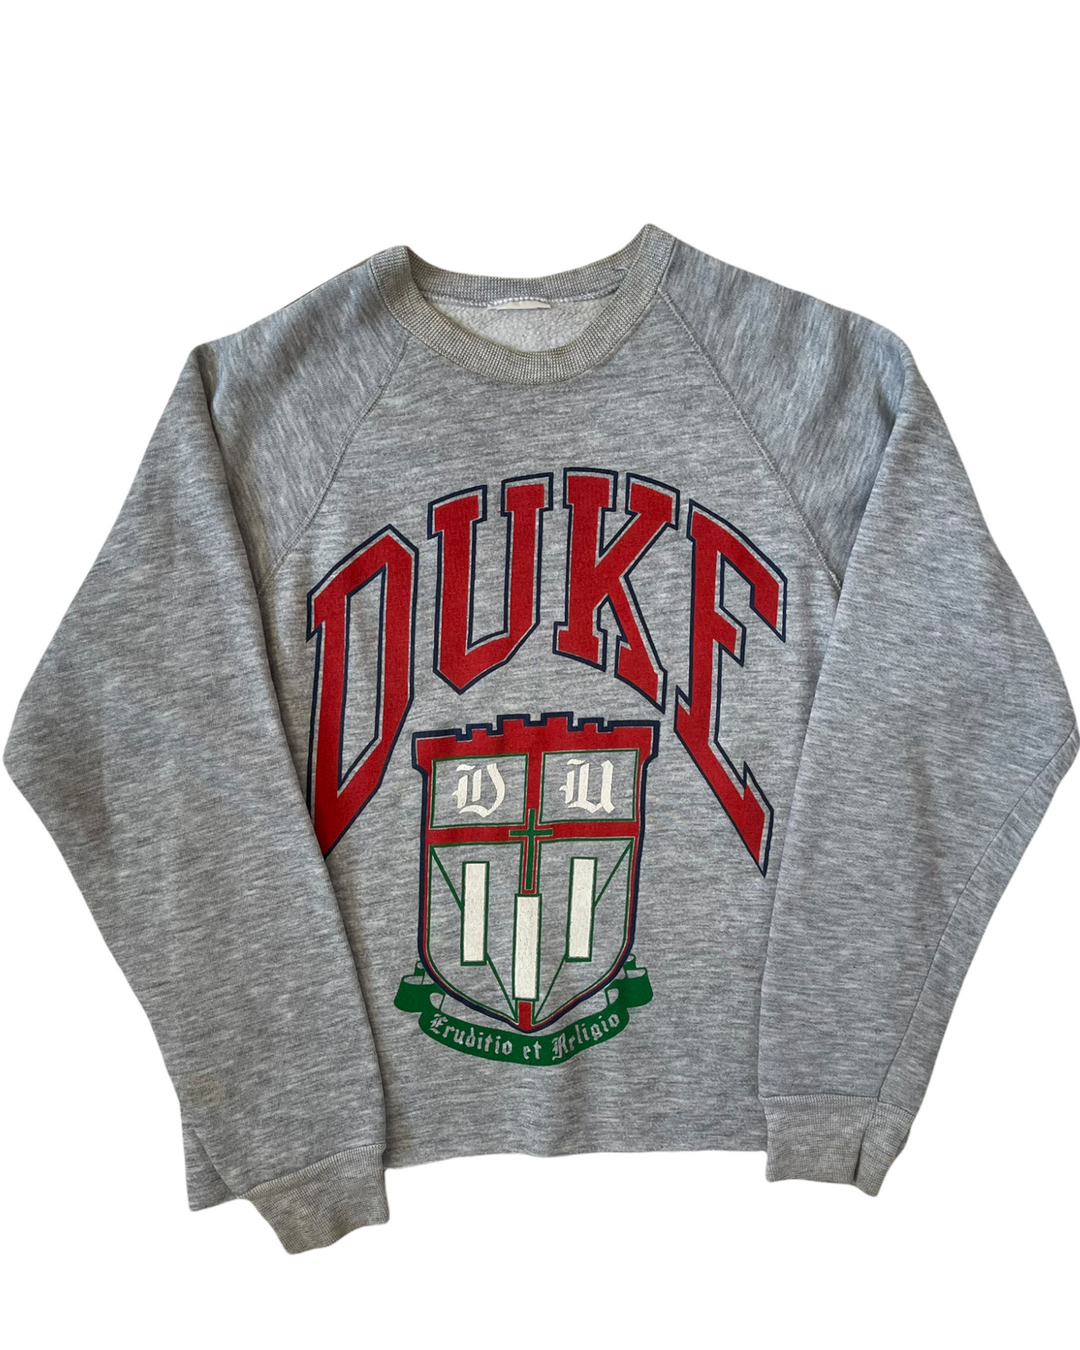 Duke Vintage Sweatshirt